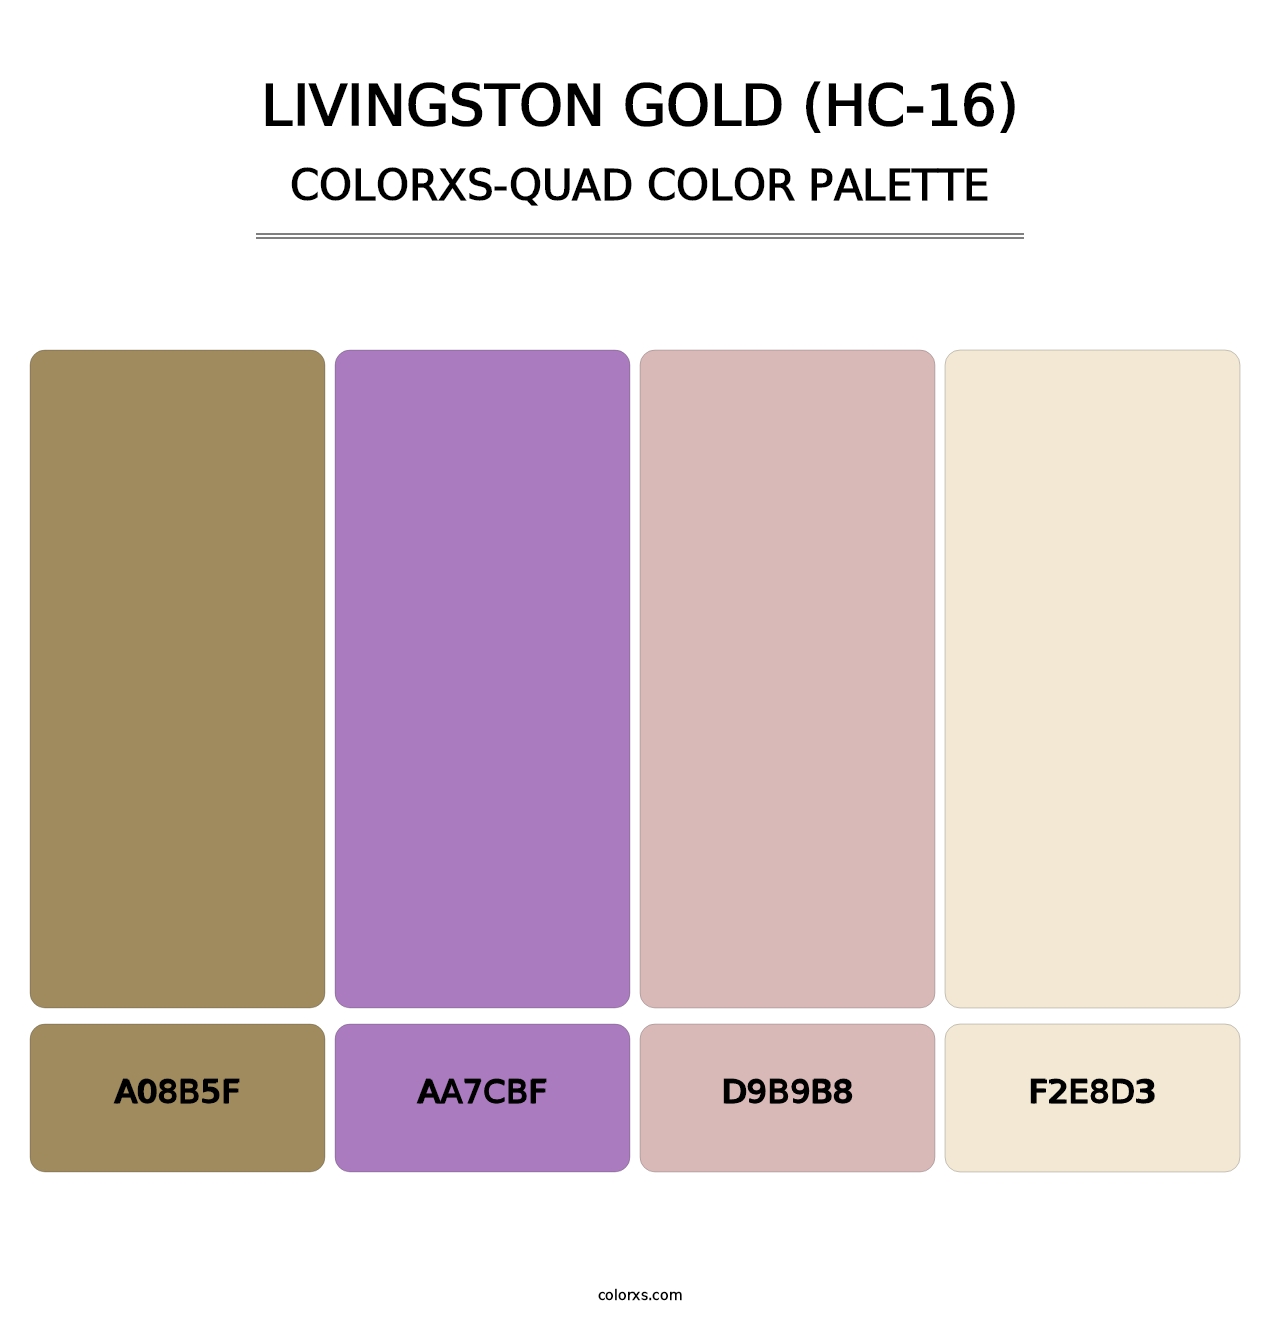 Livingston Gold (HC-16) - Colorxs Quad Palette